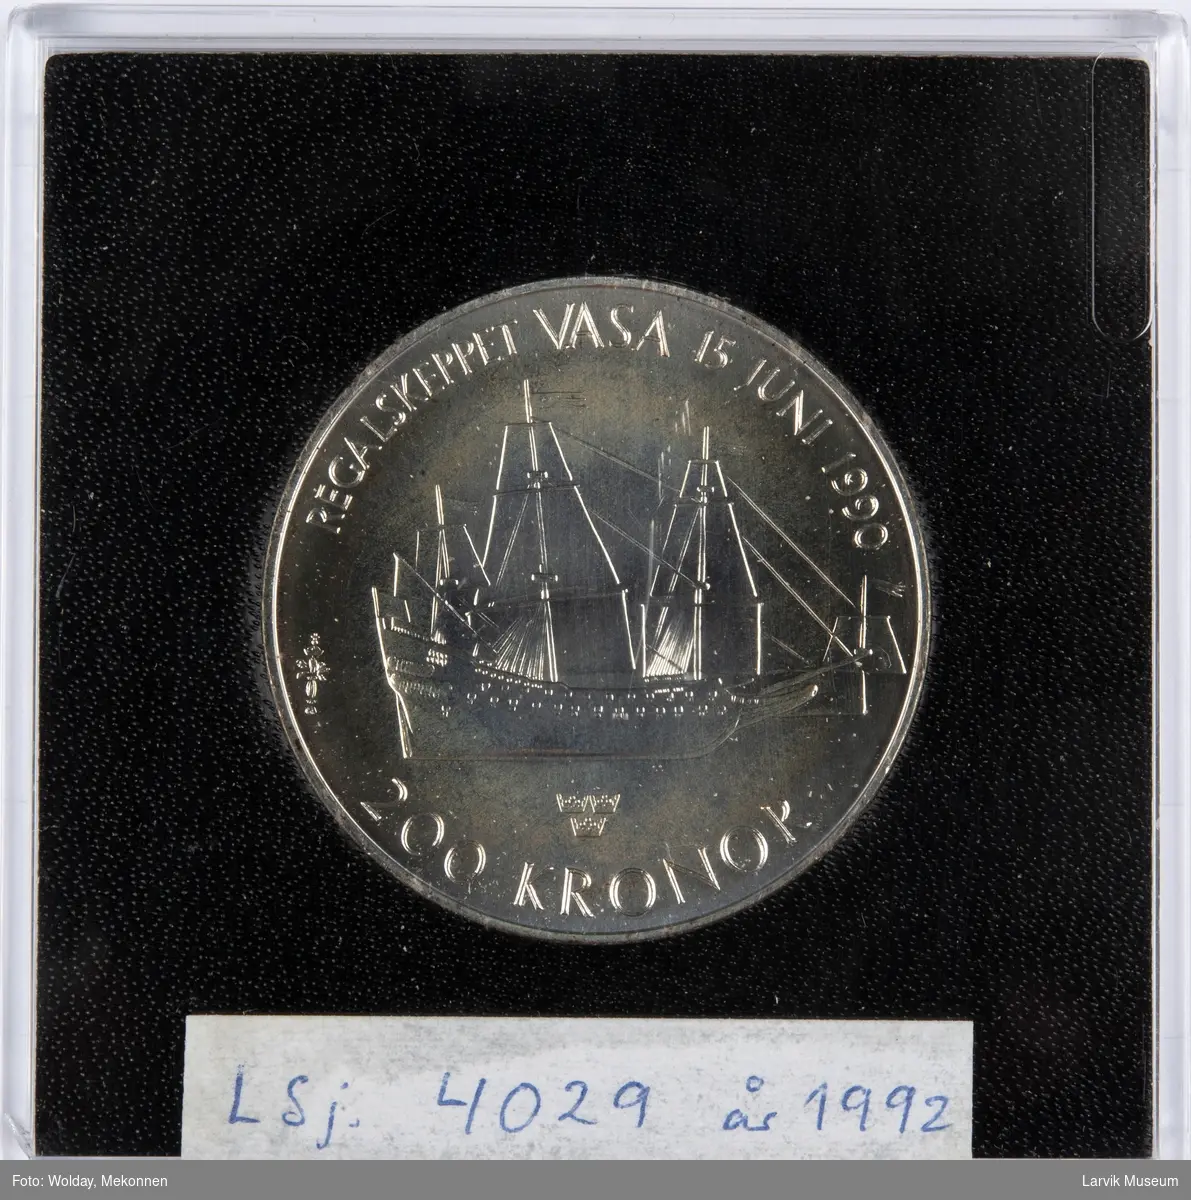 Forside: Regalskeppet Wasa, 15. juni 1990. 200 kronor.
Bakside: Carl XVI Gustav - Sveriges Konung.